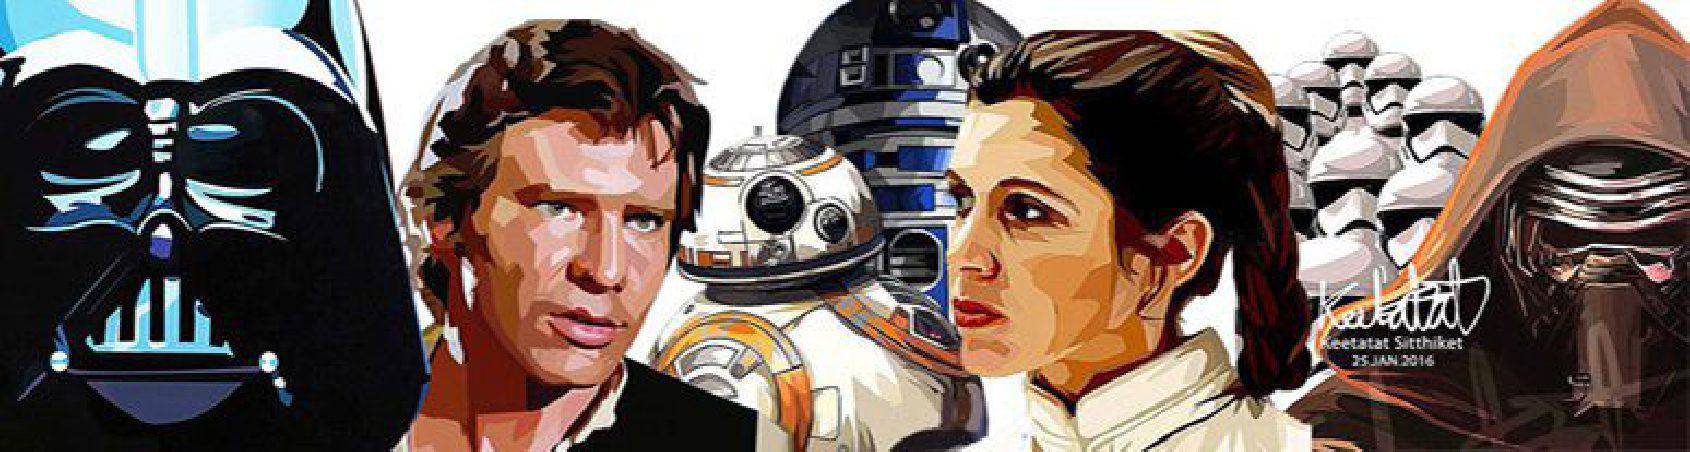 Star Wars personajes | imágenes para decorar estilo Pop-Art